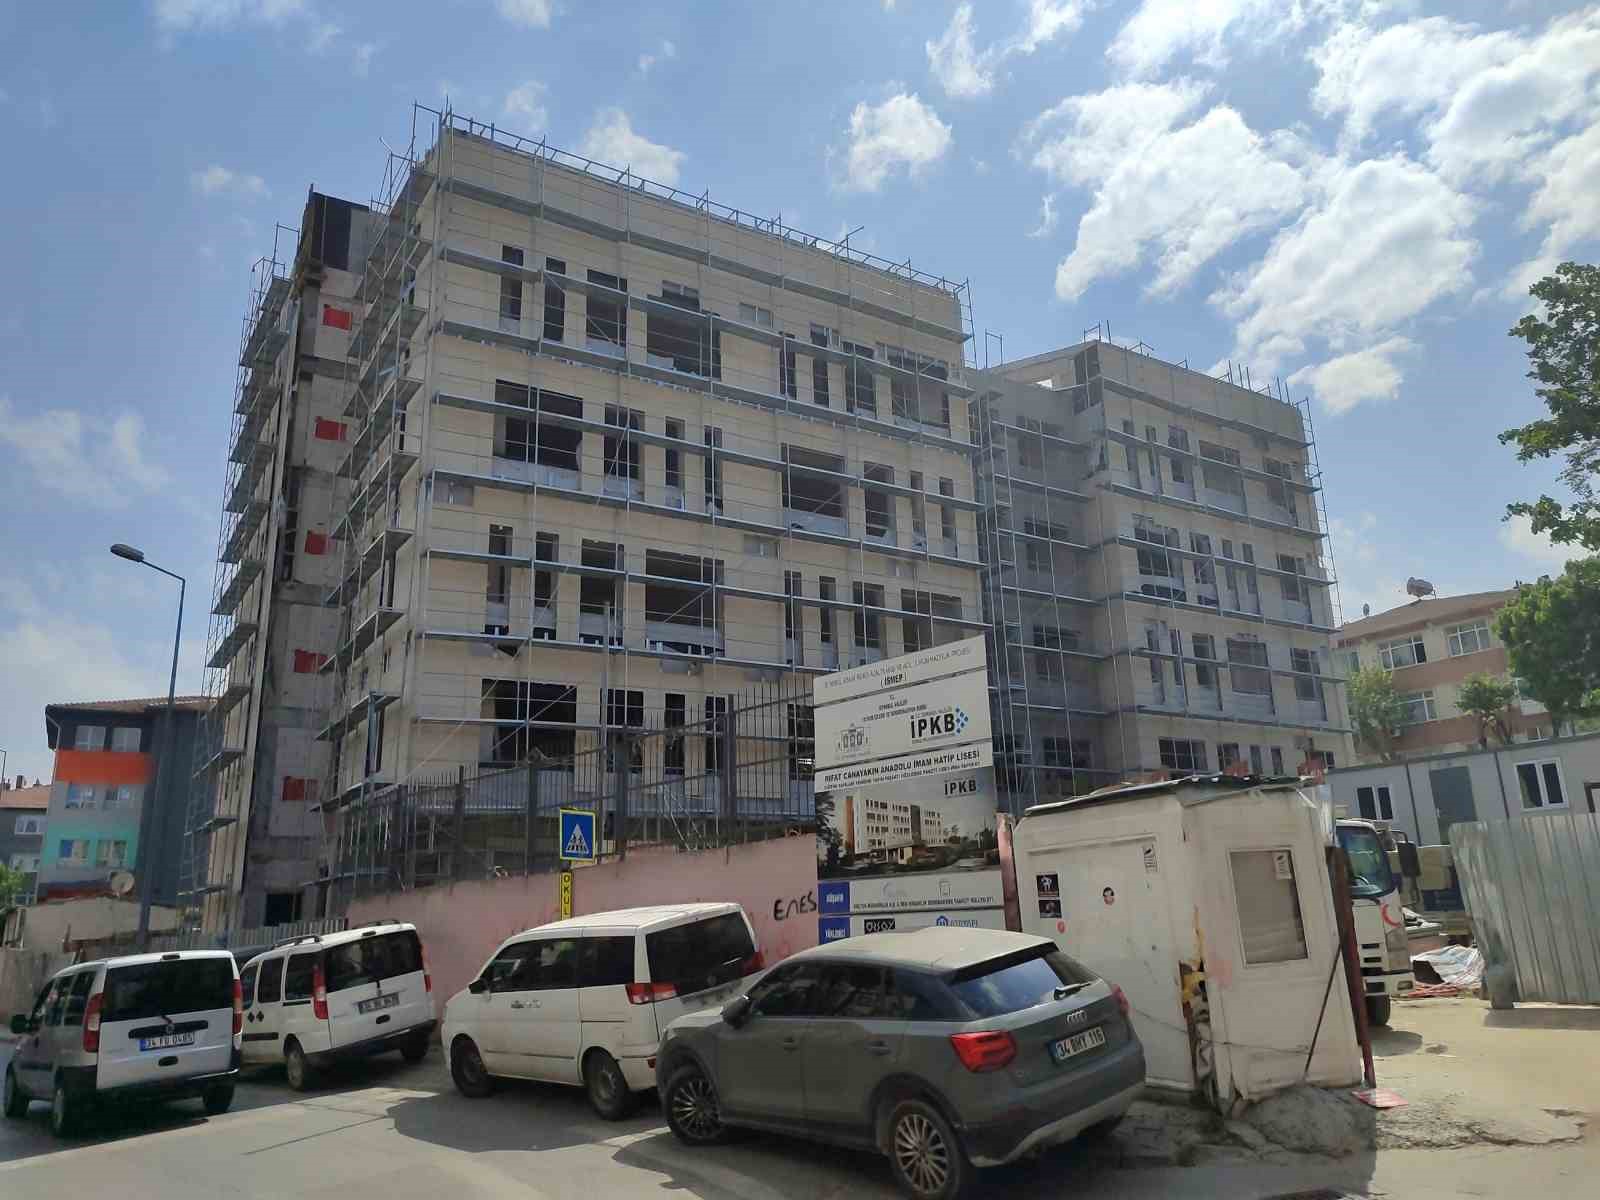 istanbuldaki depreme karsi yeniden yapilan okullarda calismalar agir gidiyor iddiasi 5 pOSg1lQO